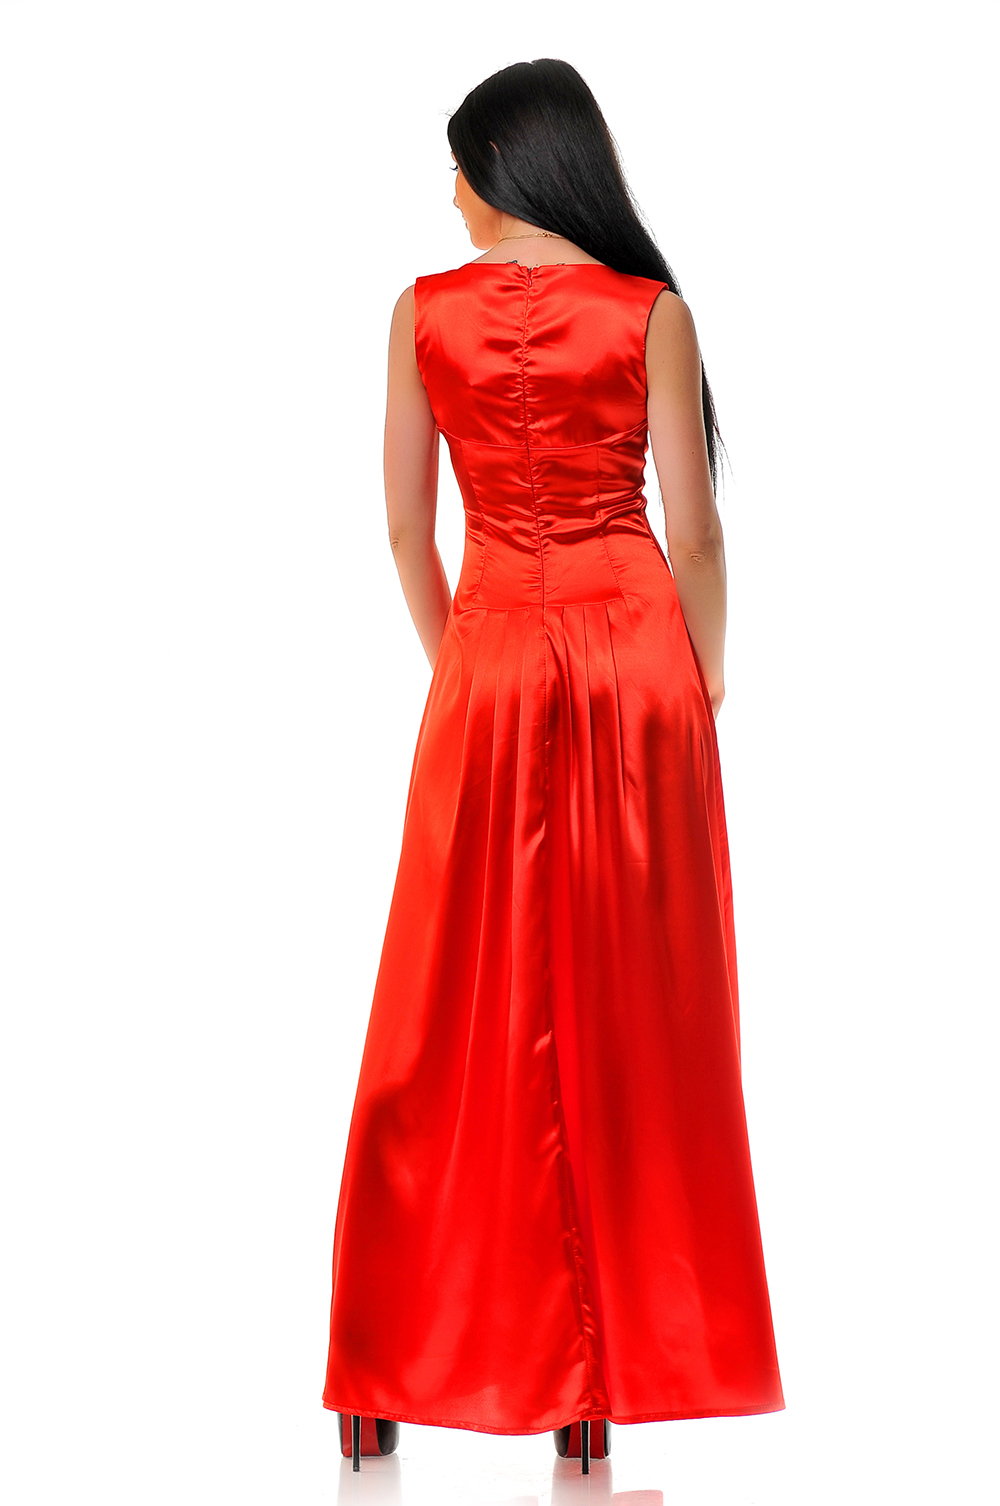 Довга червона сукня